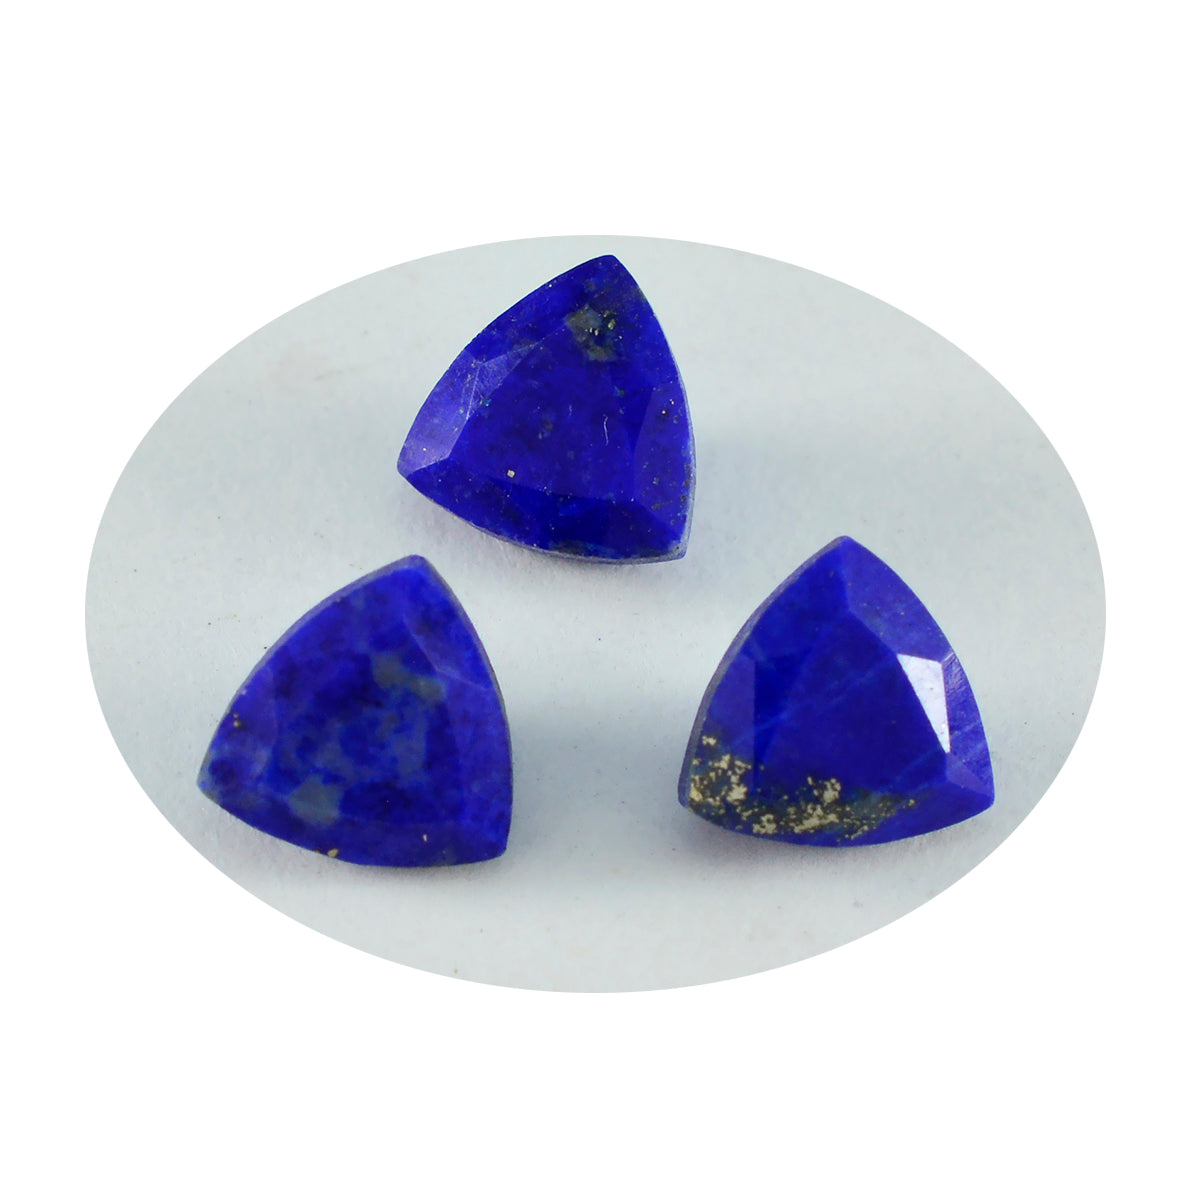 riyogems 1 шт. настоящий синий лазурит ограненный 12x12 мм форма триллиона AAA качественный камень